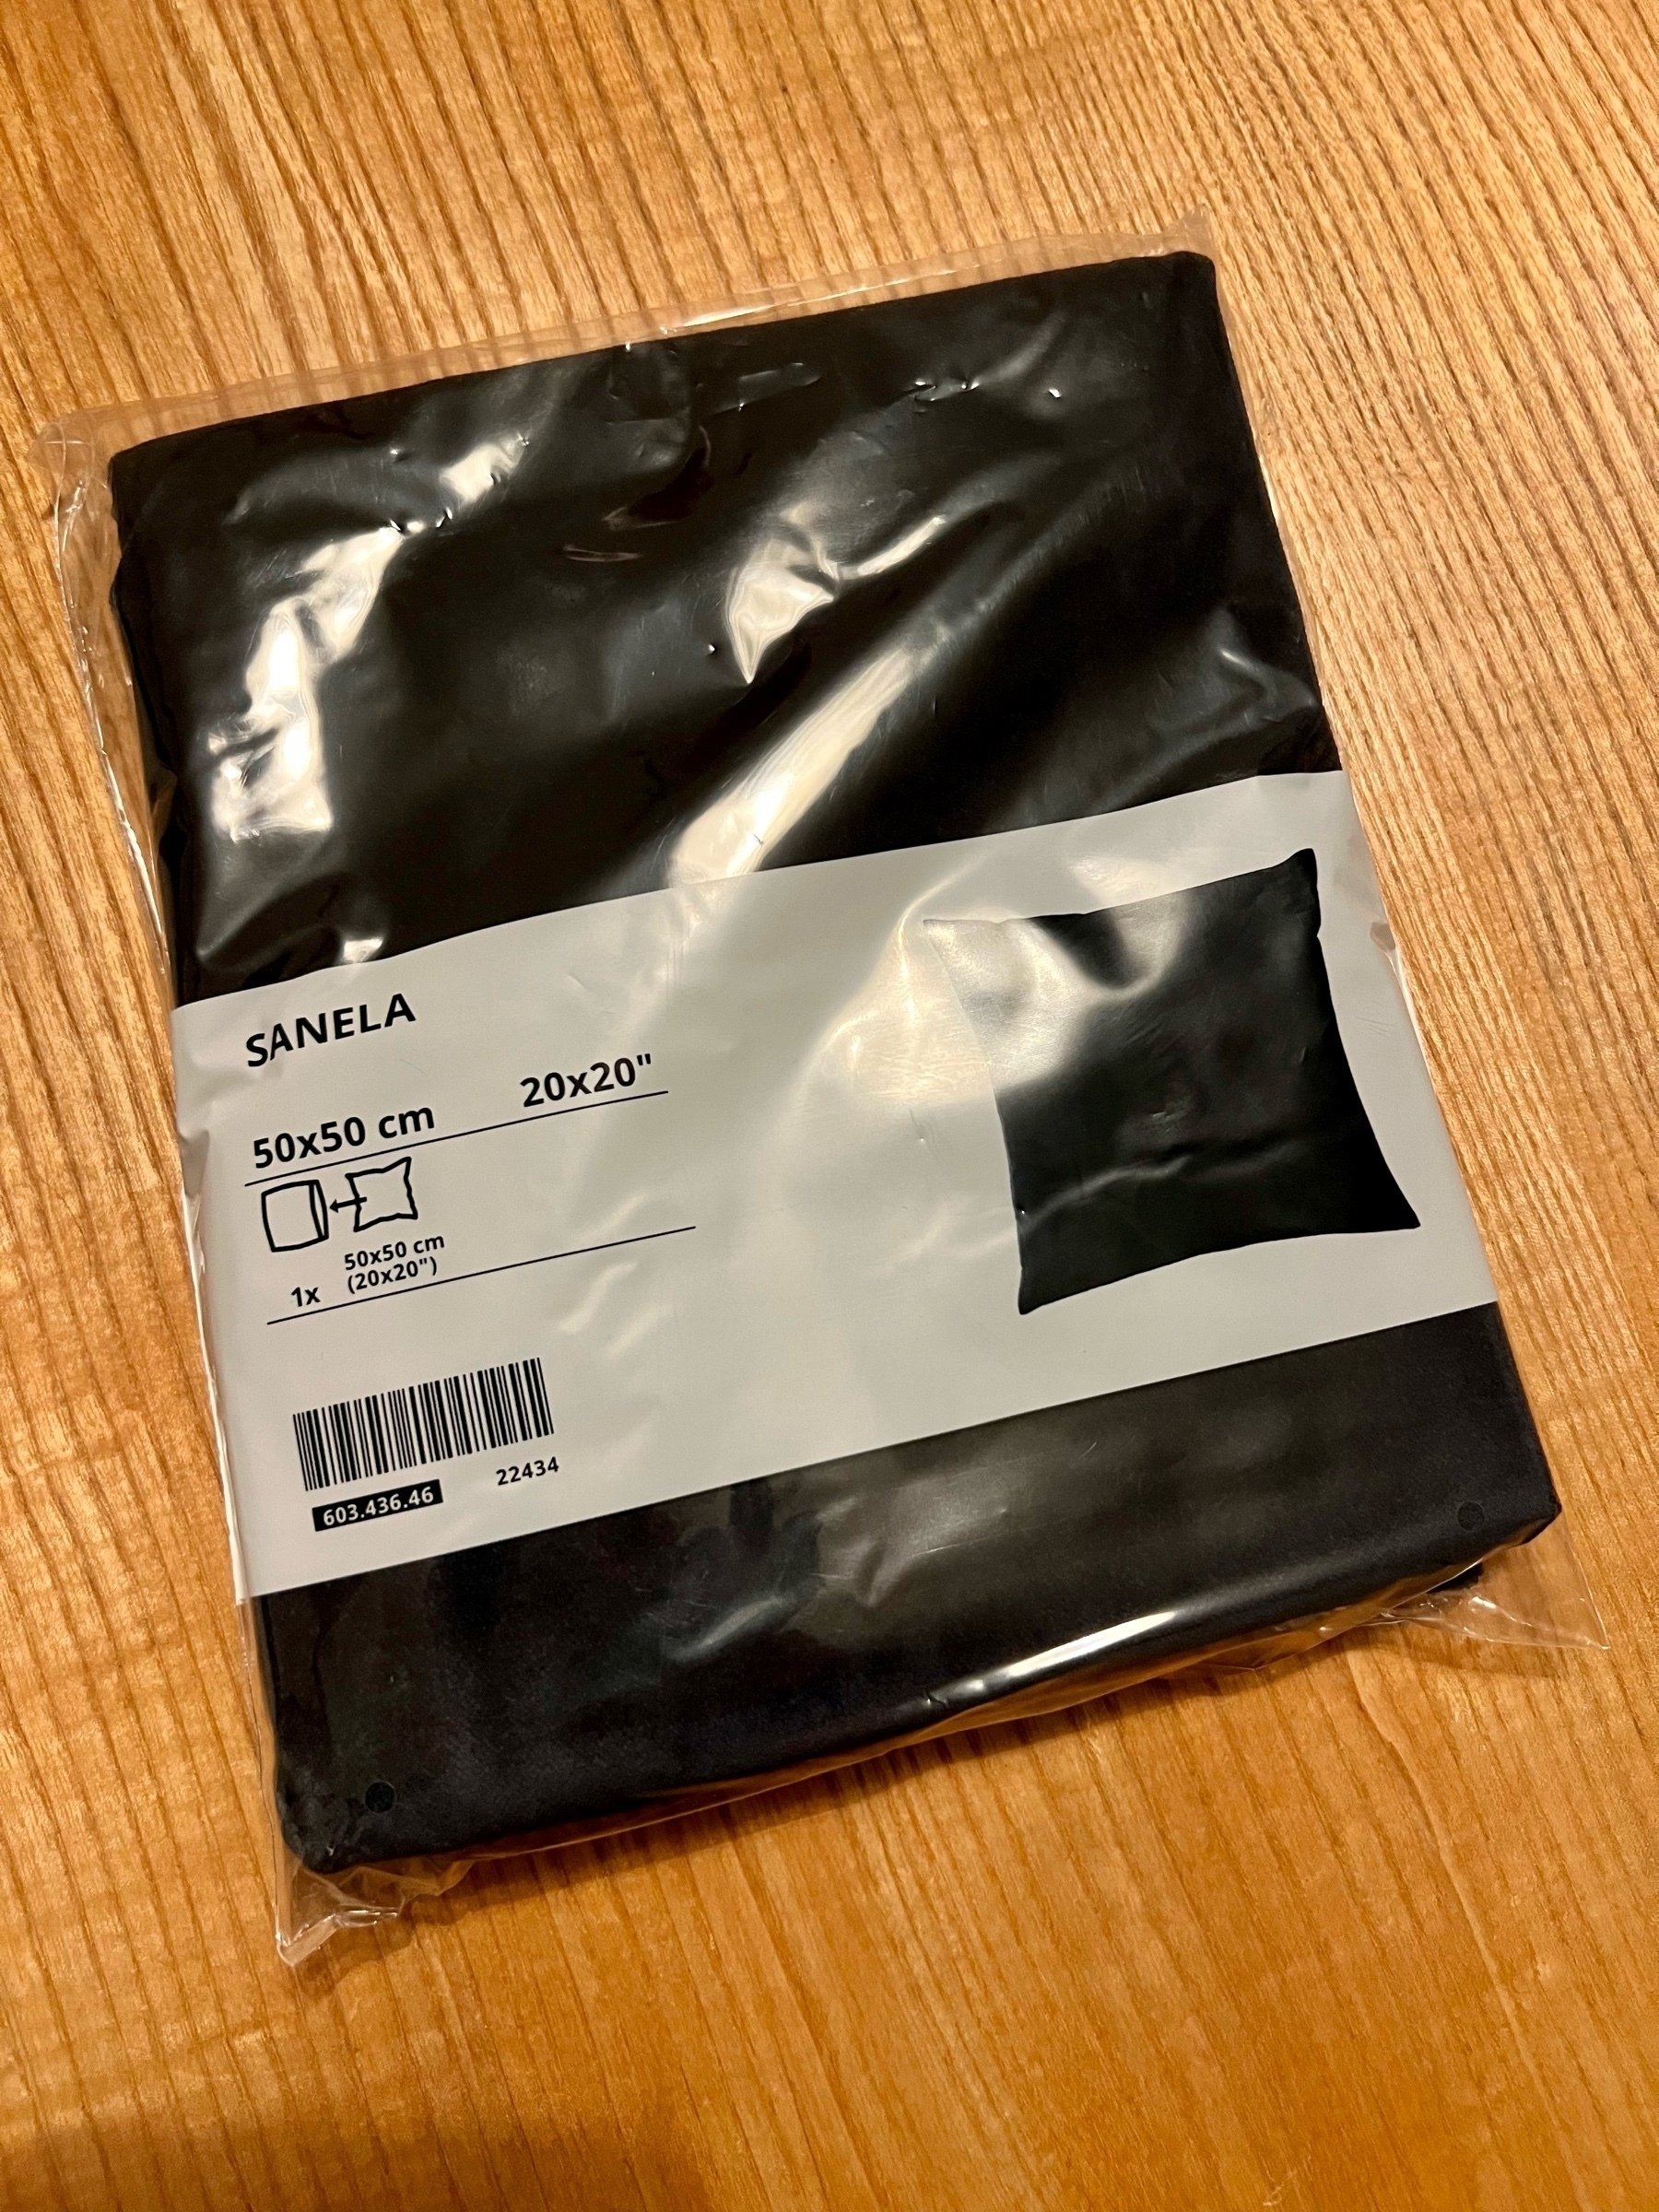 Schwarzer Kissenbezug ”Sanela“ von IKEA in der Verkaufsverpackung auf einem Holztisch.